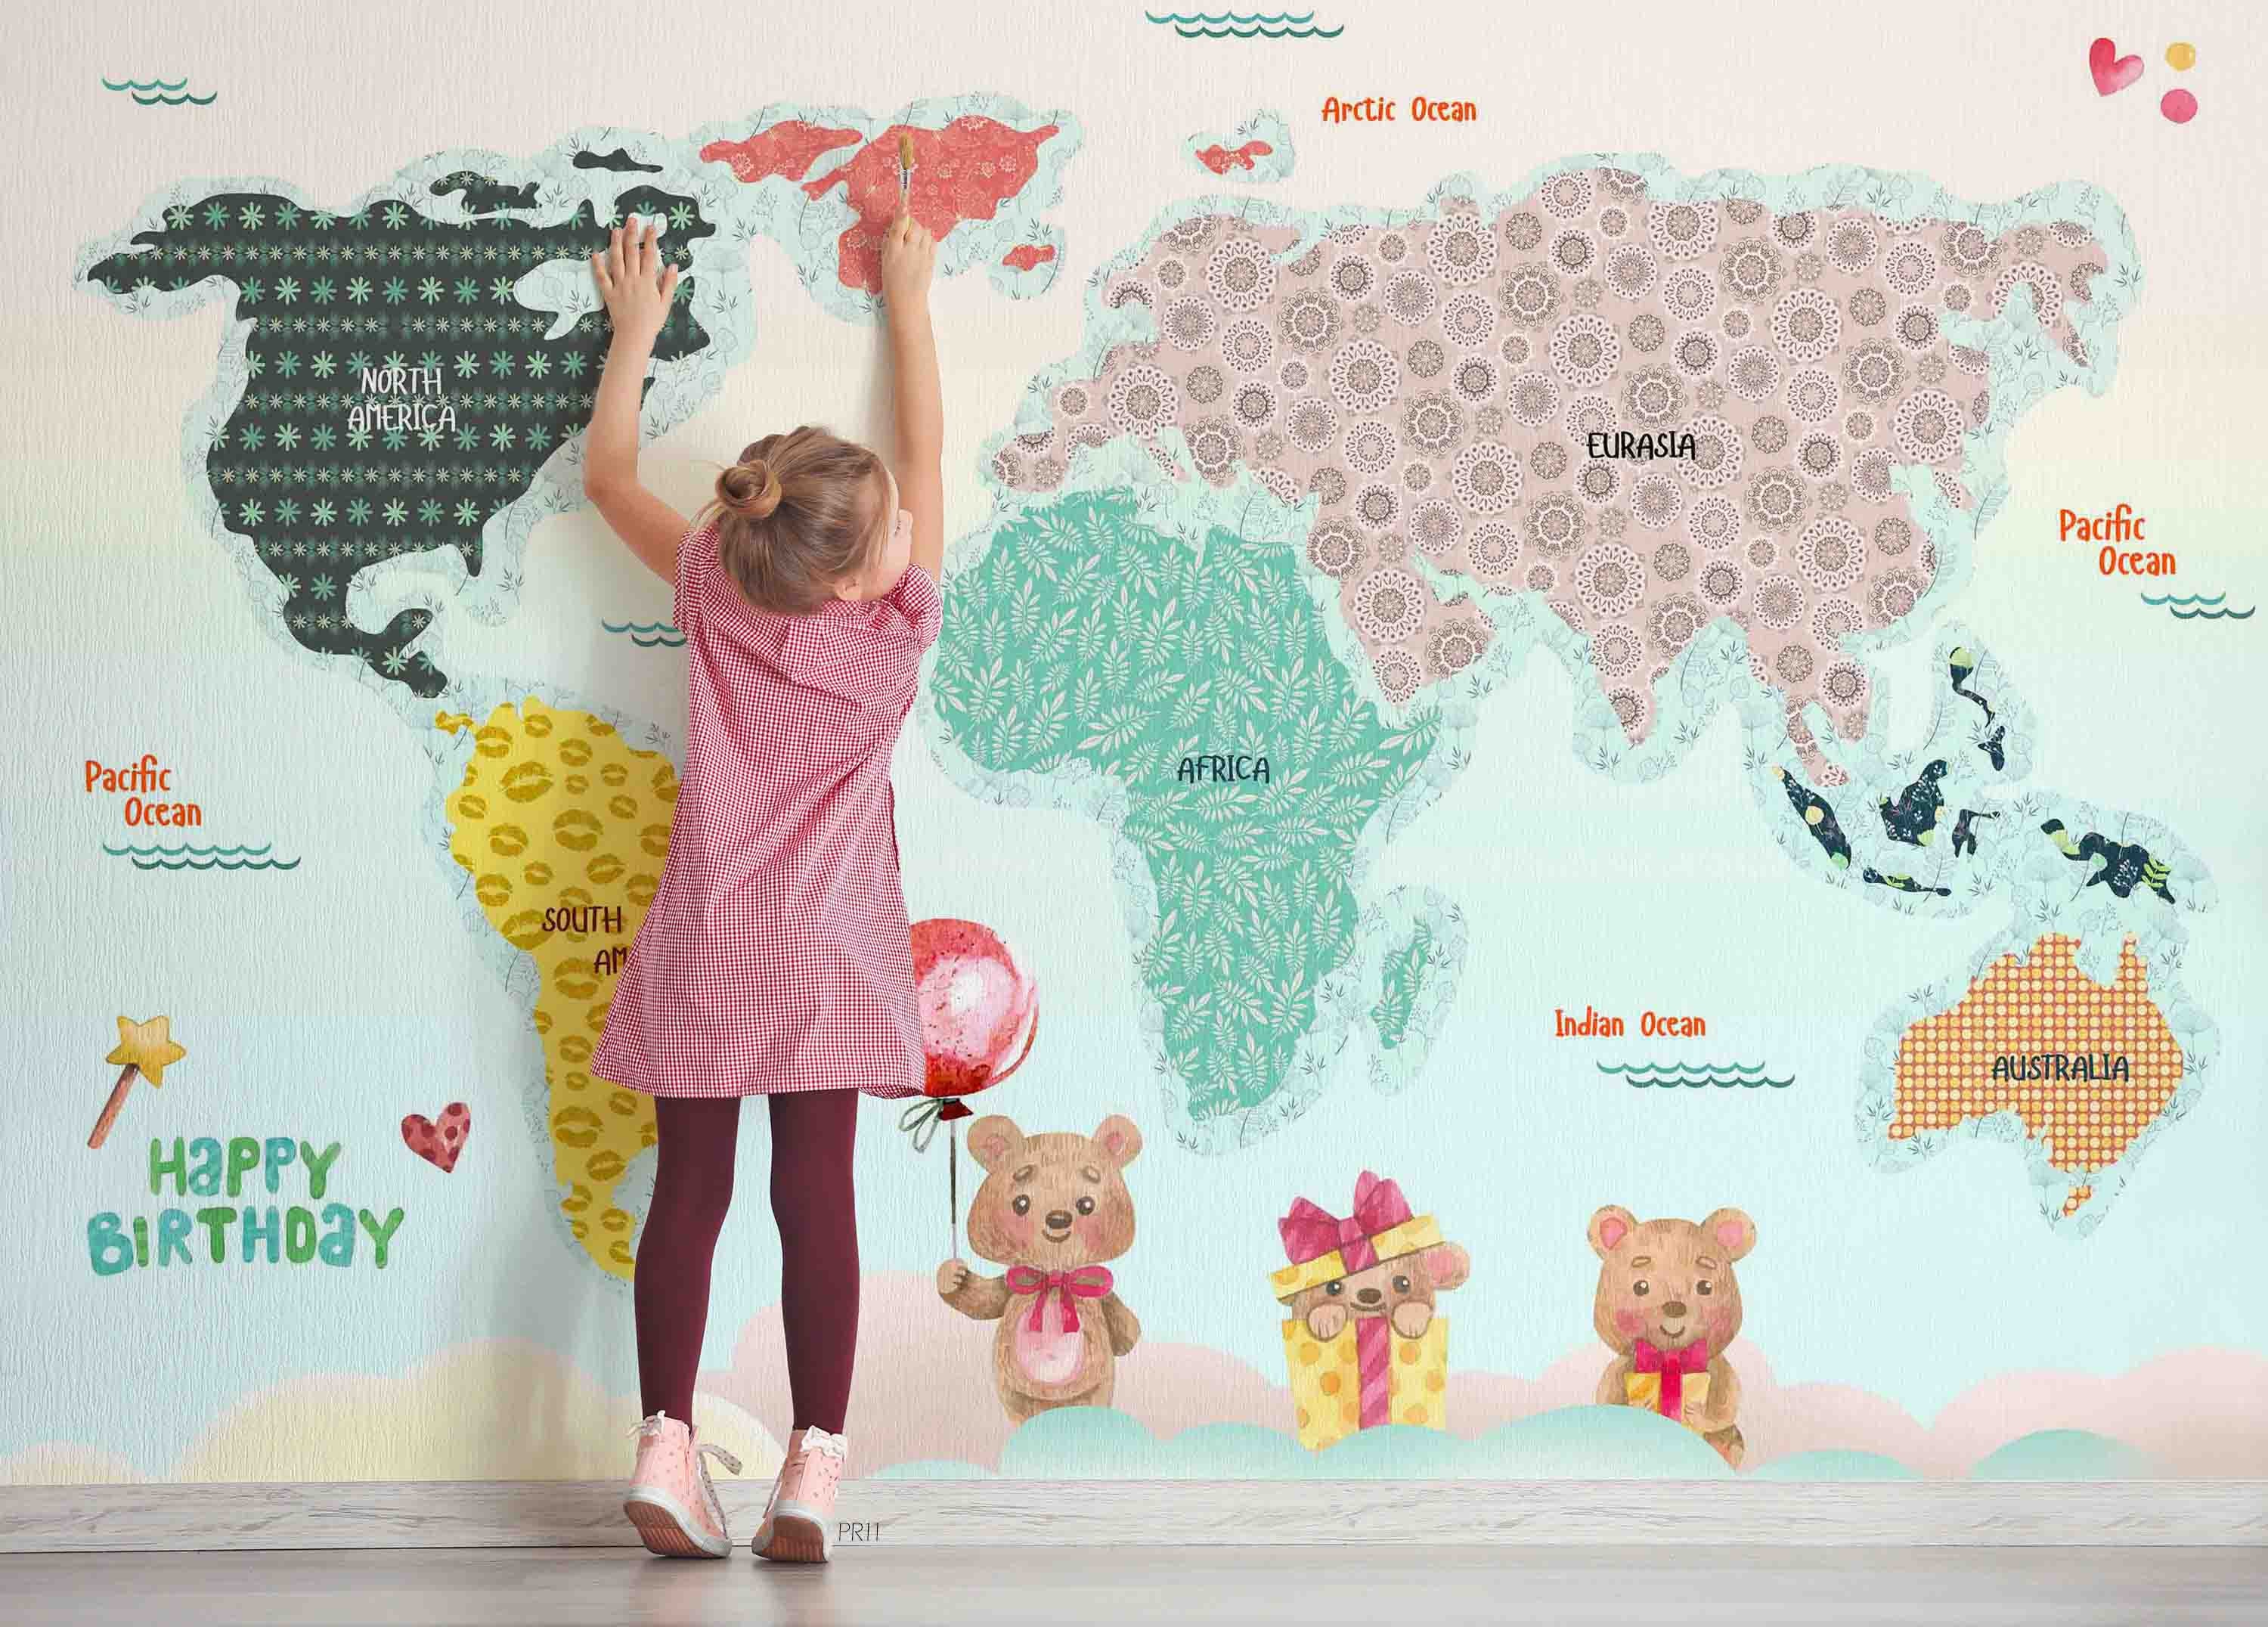 3D Cartoon Colorful World Map Wall Mural Wallpaper GD 4897- Jess Art Decoration